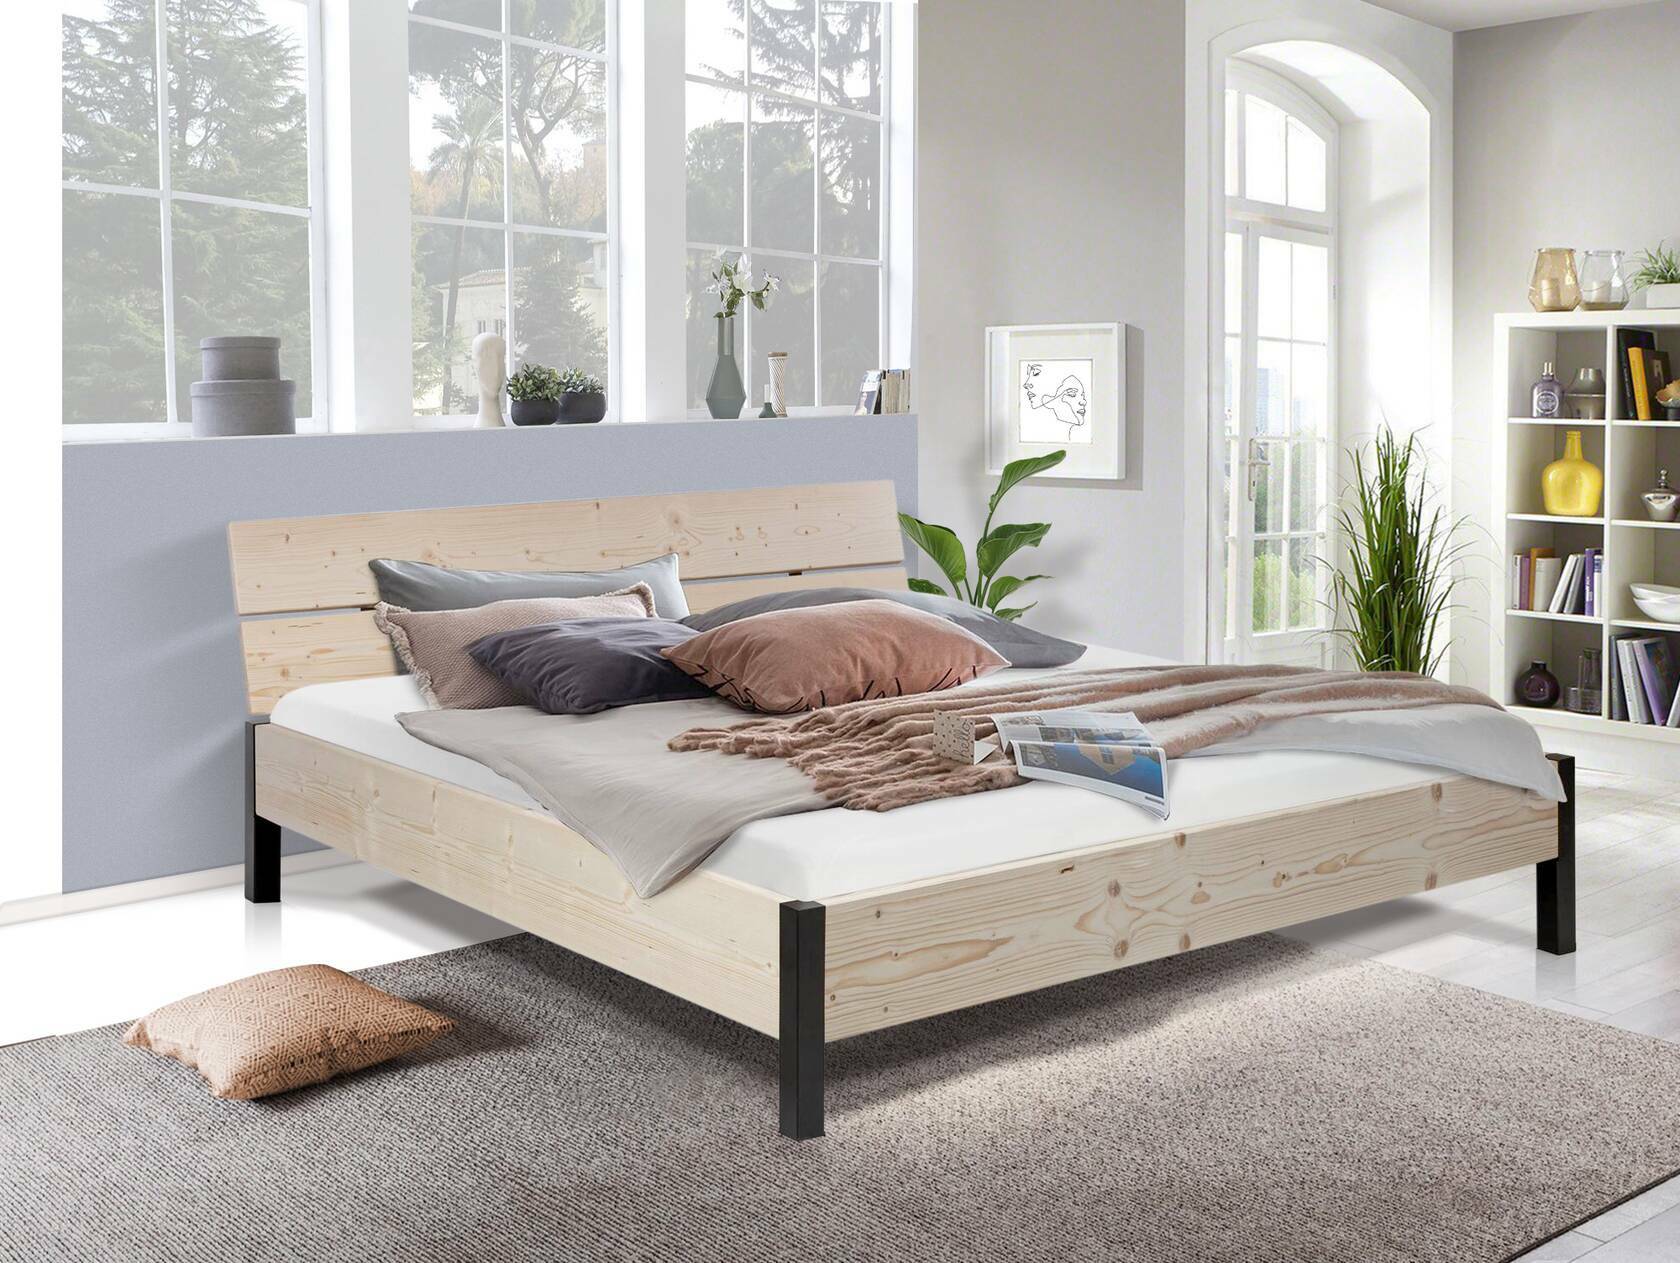 LUKY Bett Metallfuß, Material Massivholz, Fichte massiv, mit/ohne Kopfteil 120 x 200 cm | natur | mit Kopfteil